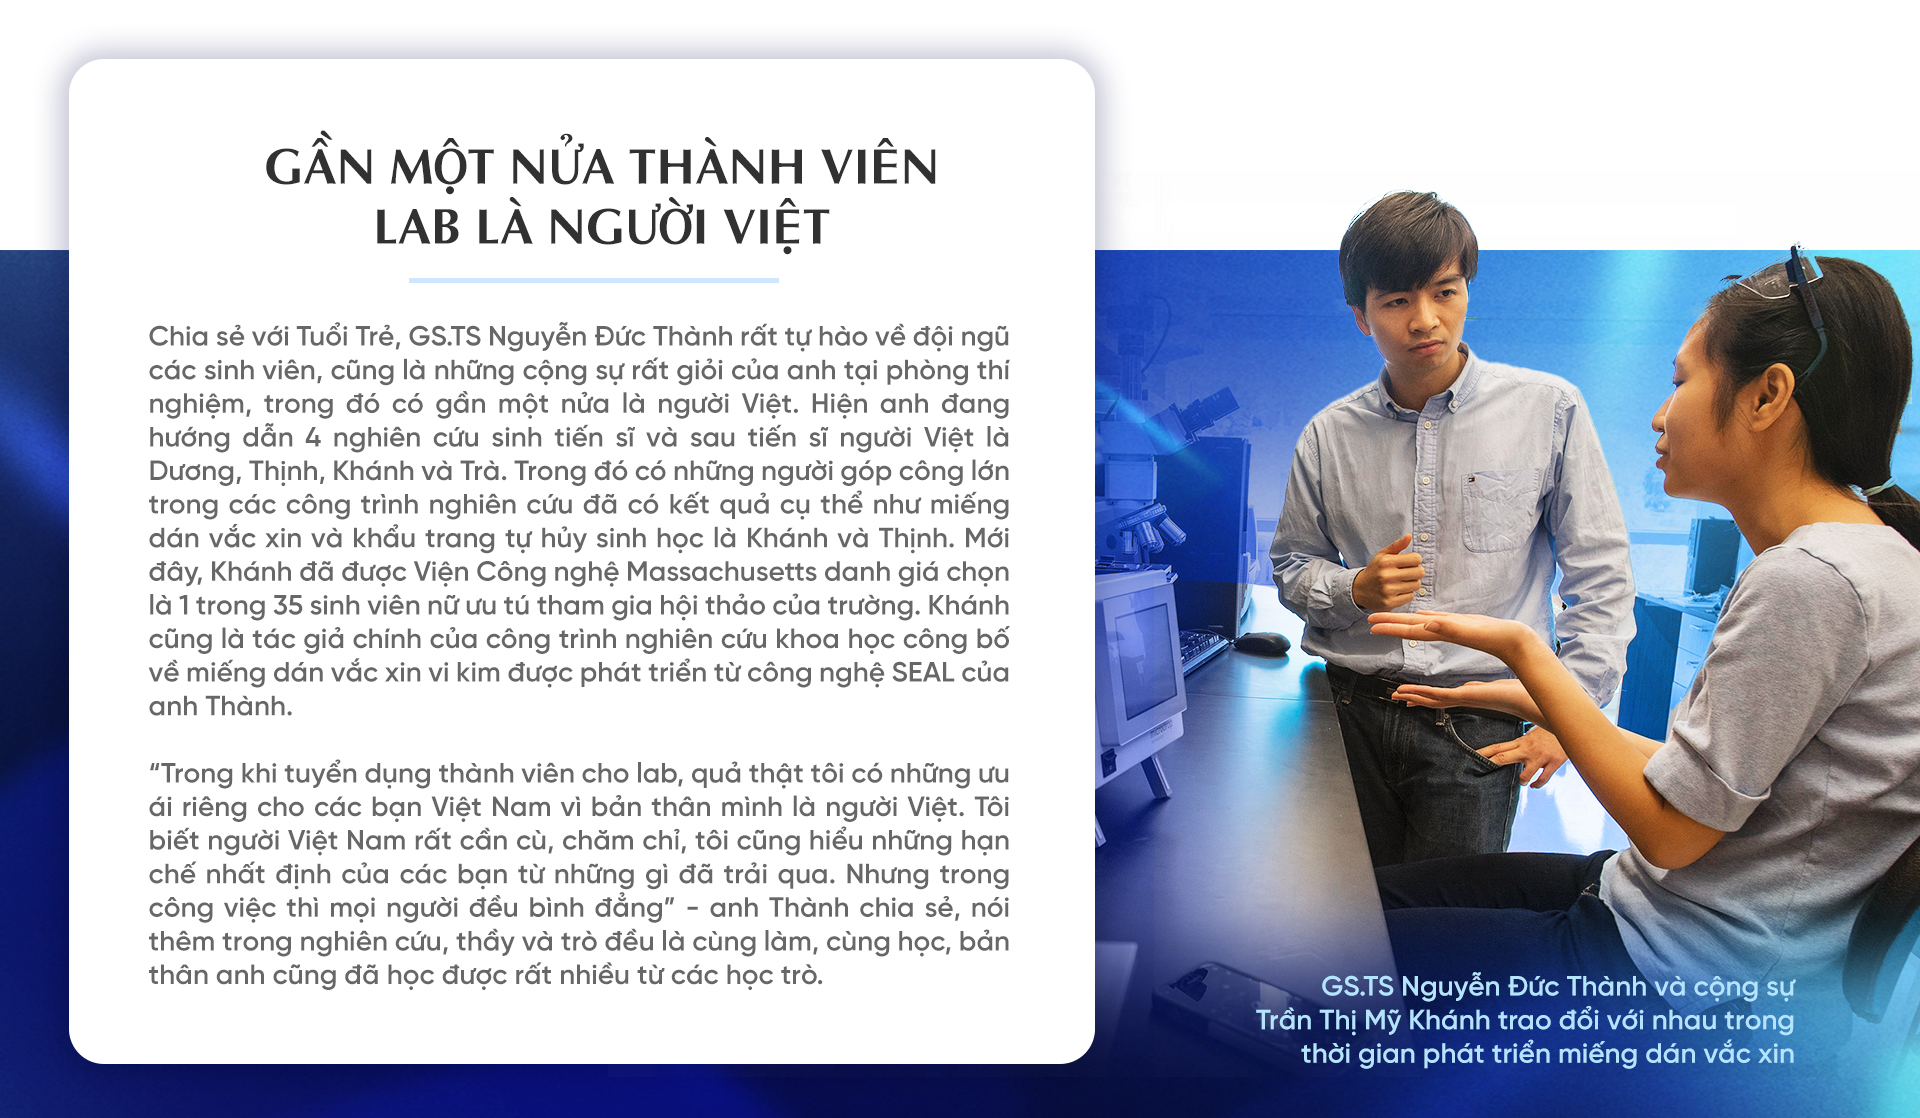 Dấu ấn Việt trong những phát minh công nghệ mới - Ảnh 14.